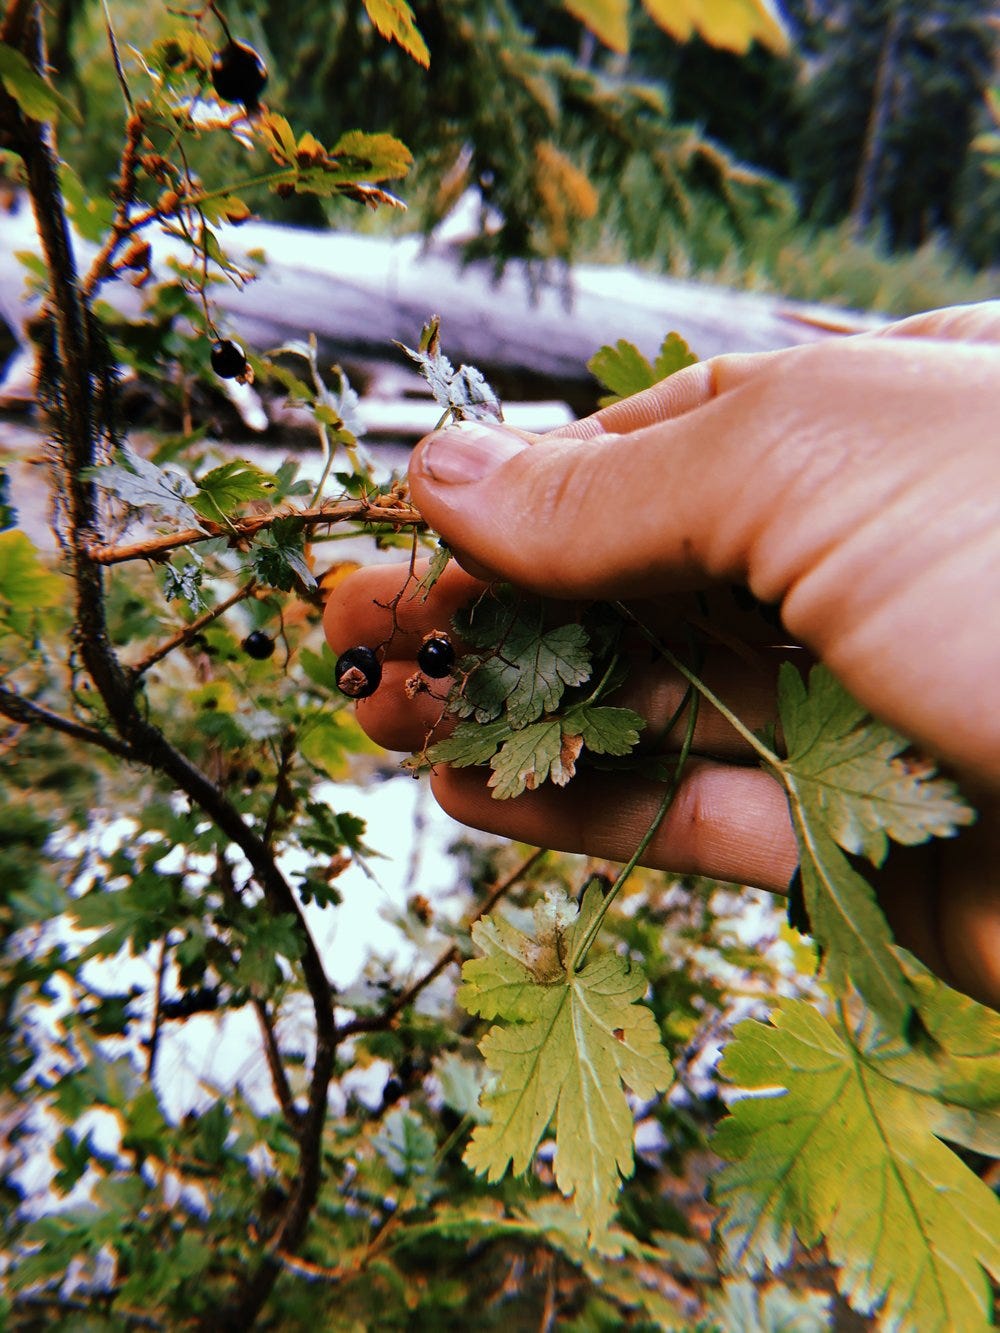 Gooseberry (Ribes)